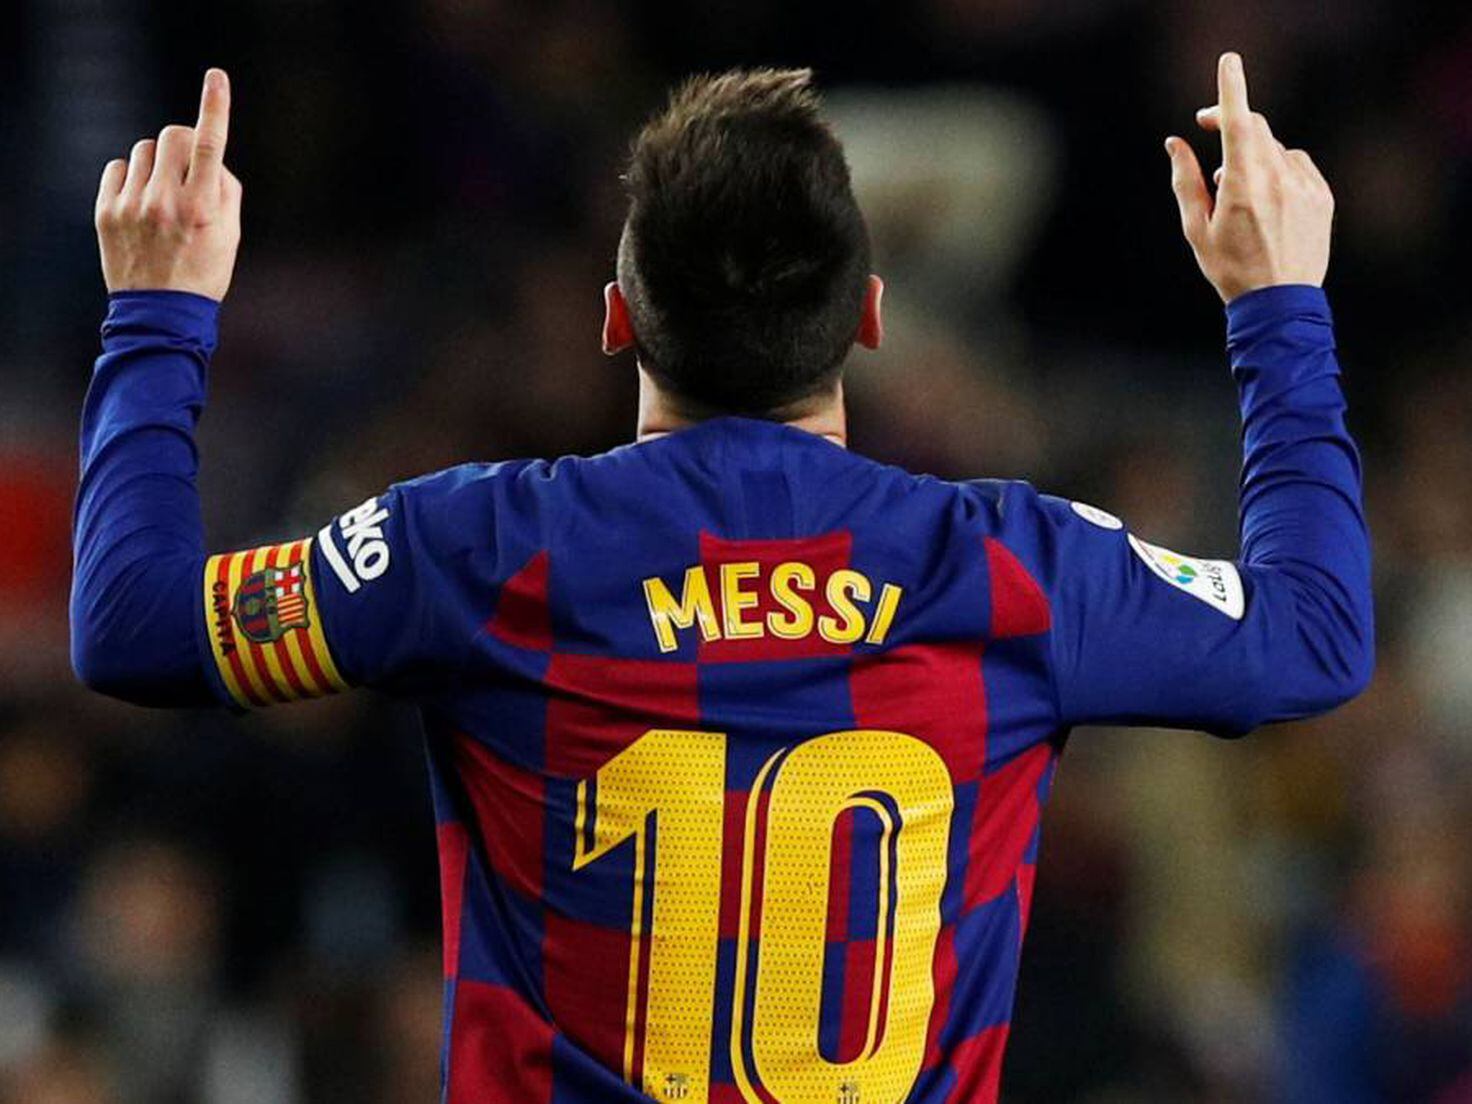 Lionel Messi 'overtakes' Cristiano Ronaldo in world record that